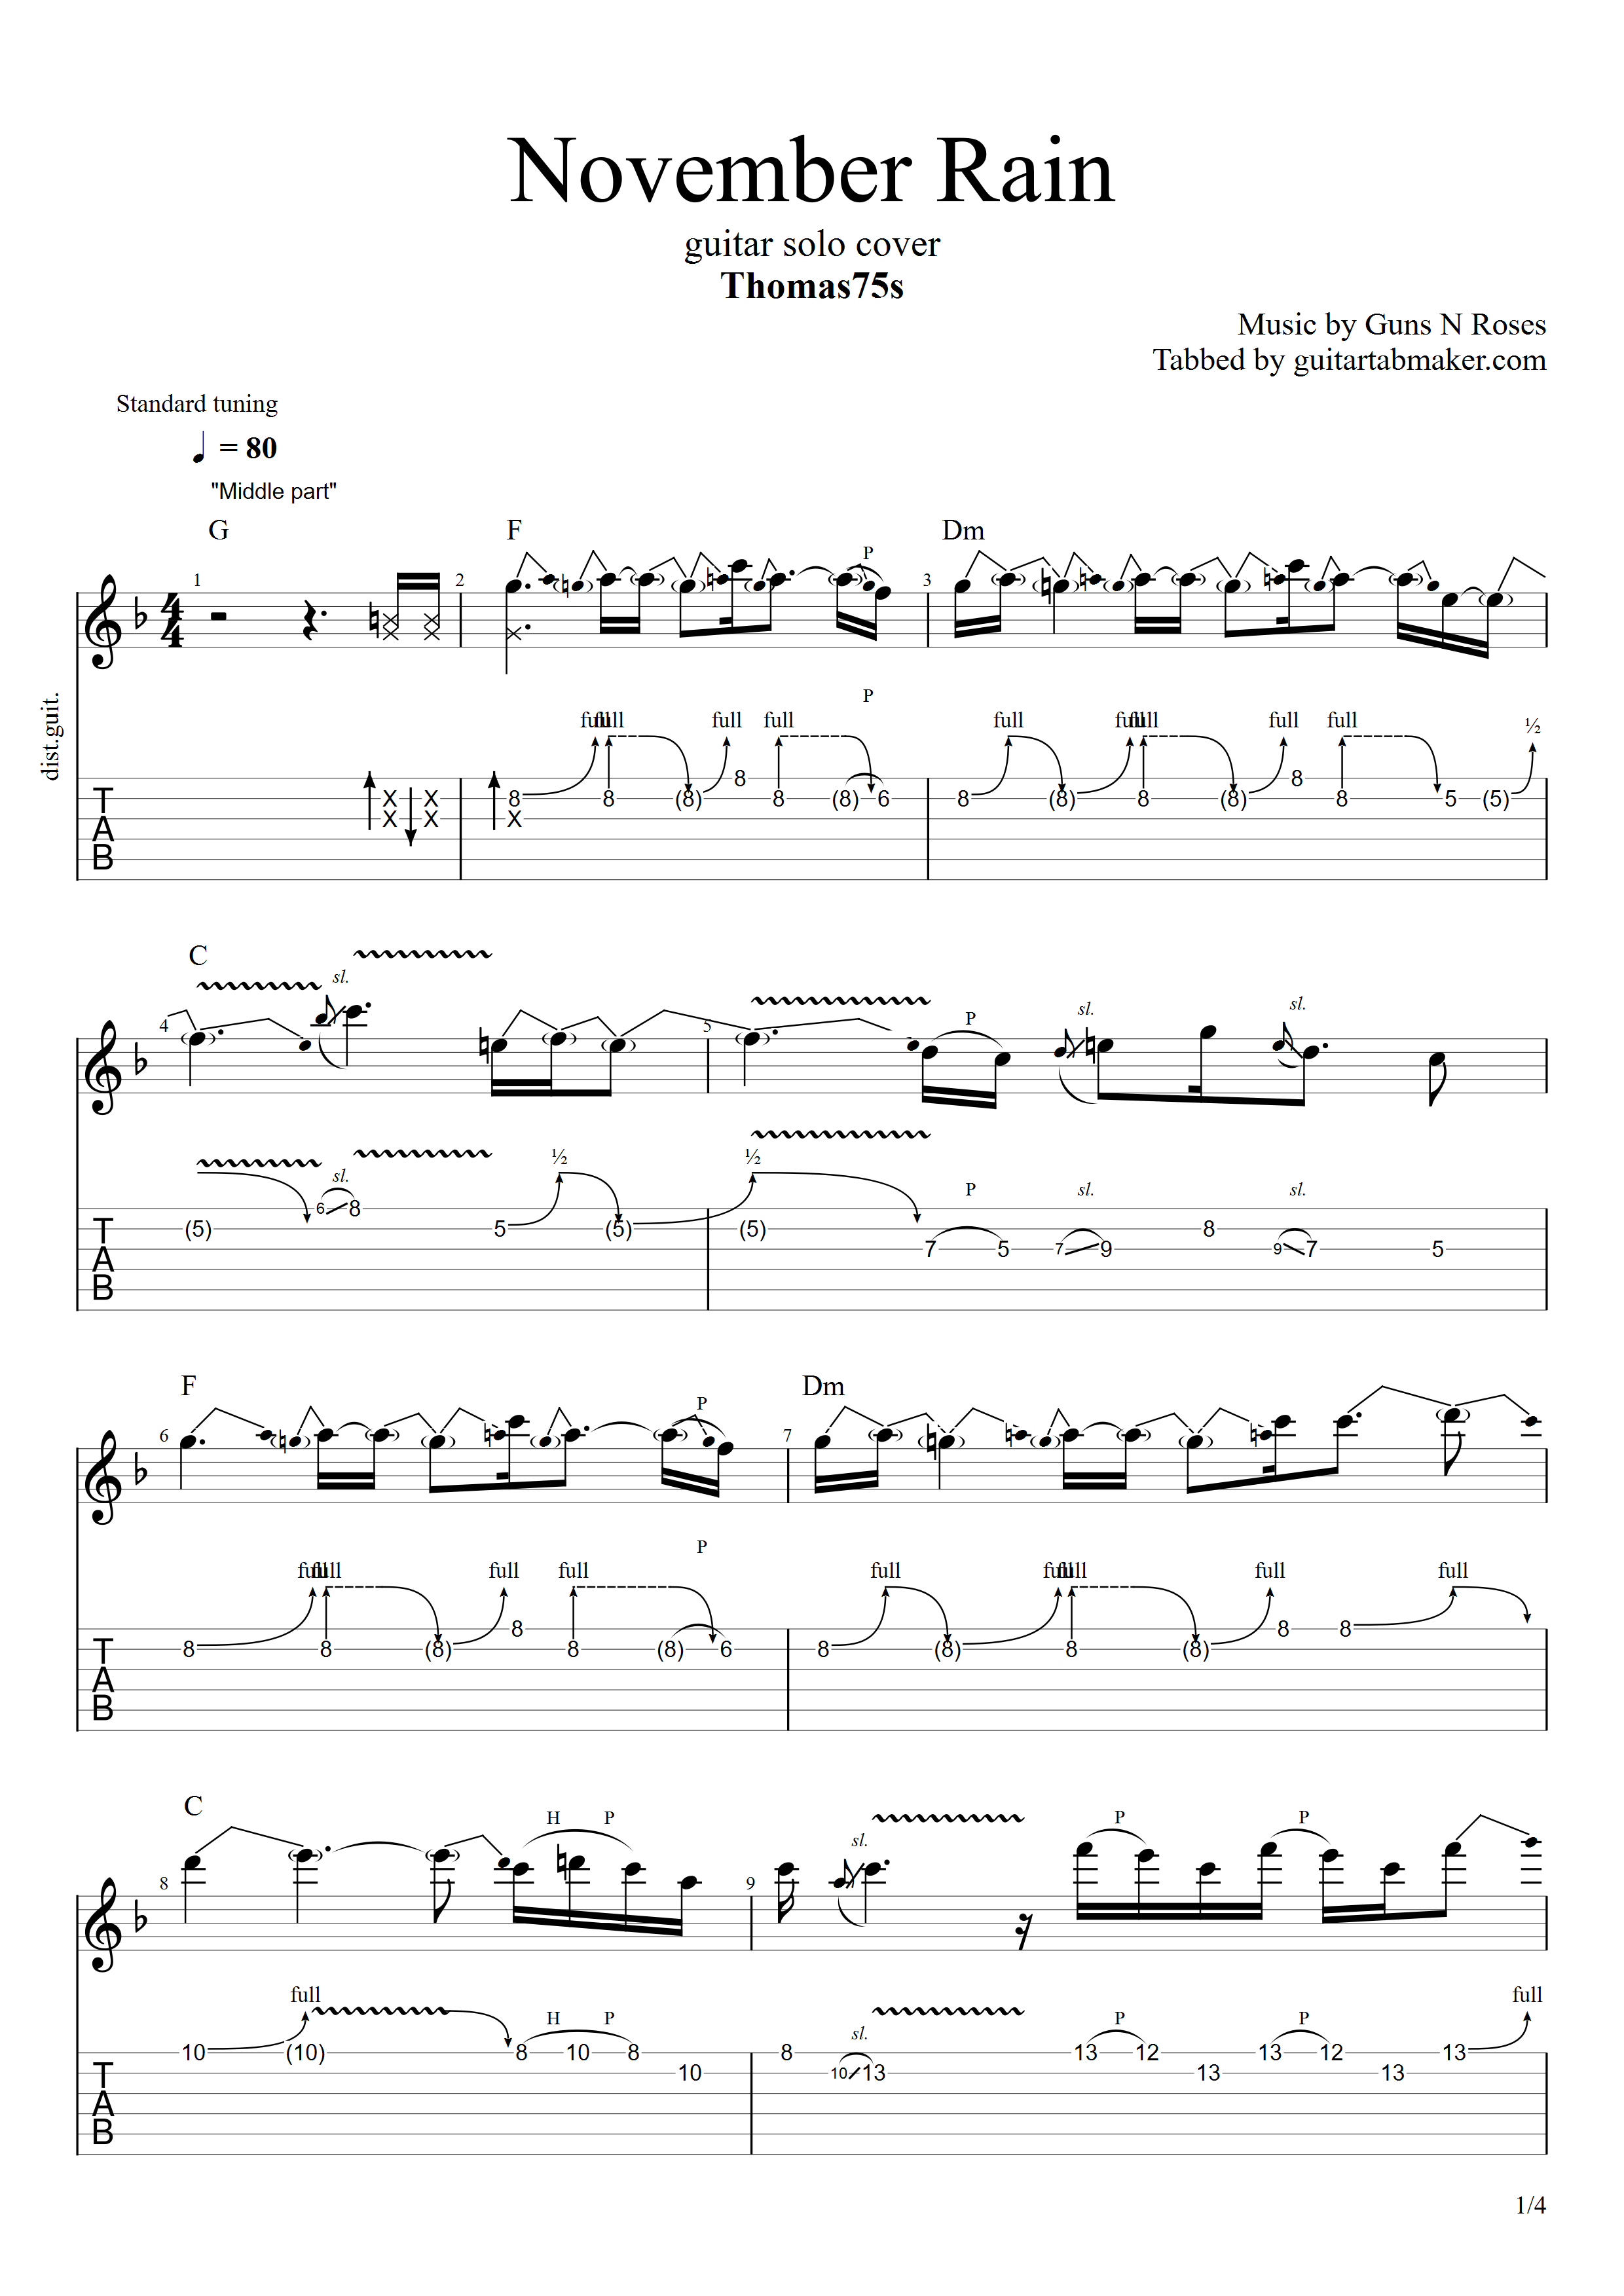 Belajar Chord Gitar November Rain dengan Mudah dan Cepat » TAB